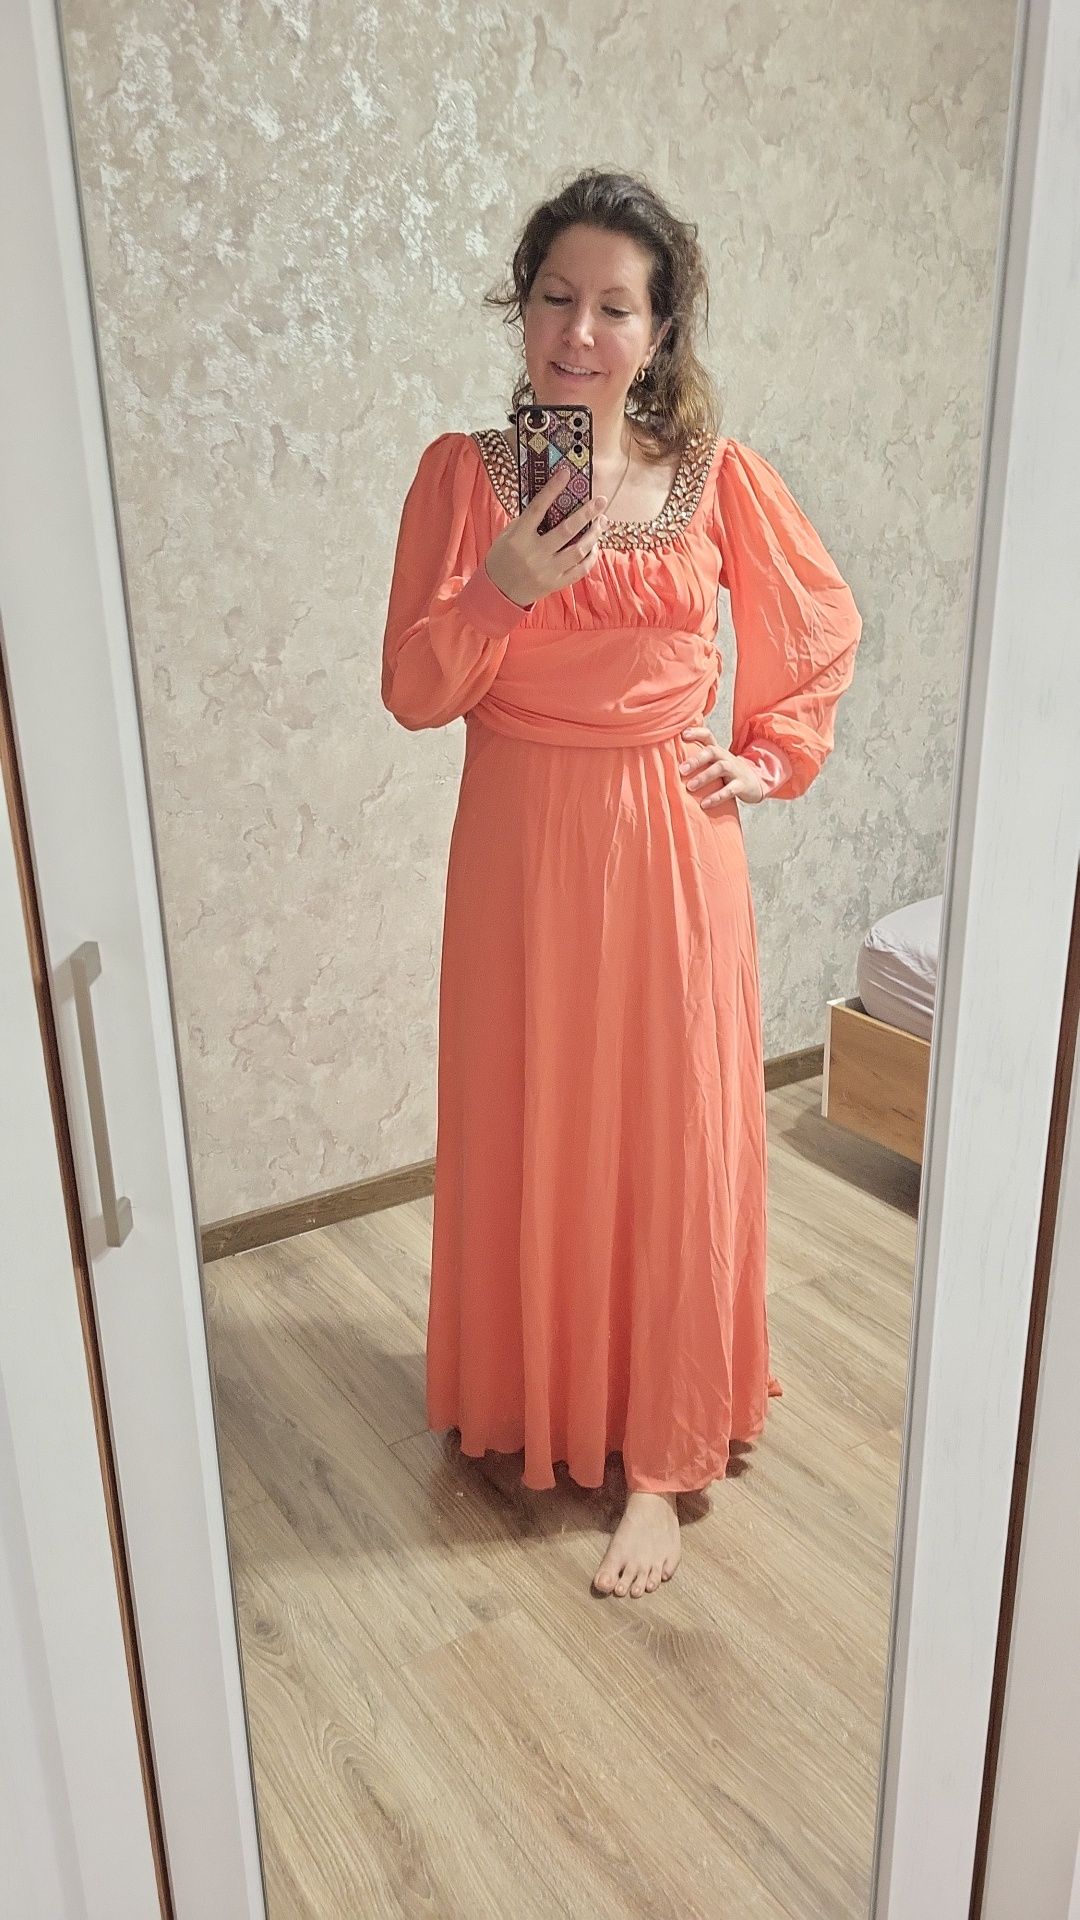 Продам нарядное платье персикового цвета46-48 размер